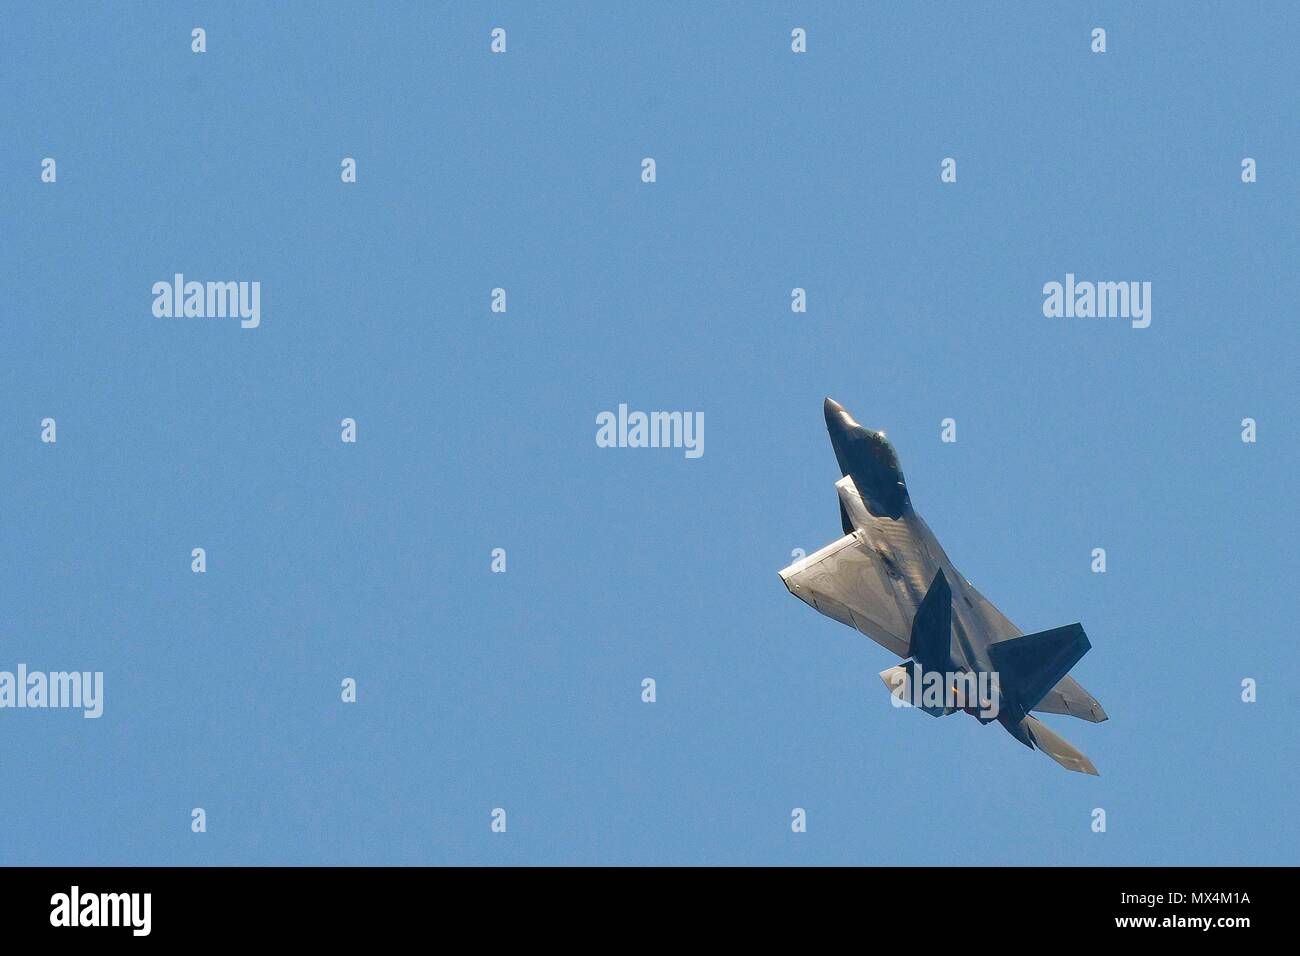 Un U.S. Air Force F-22 Raptor vola sopra il Bethpage Air Show di Jones Beach, NY., 25 maggio 2018. Nella sua dimostrazione, il velivolo ha dimostrato la furtività, supercruise, manovrabilità e avionico integrato le funzionalità di combattimento. Foto Stock